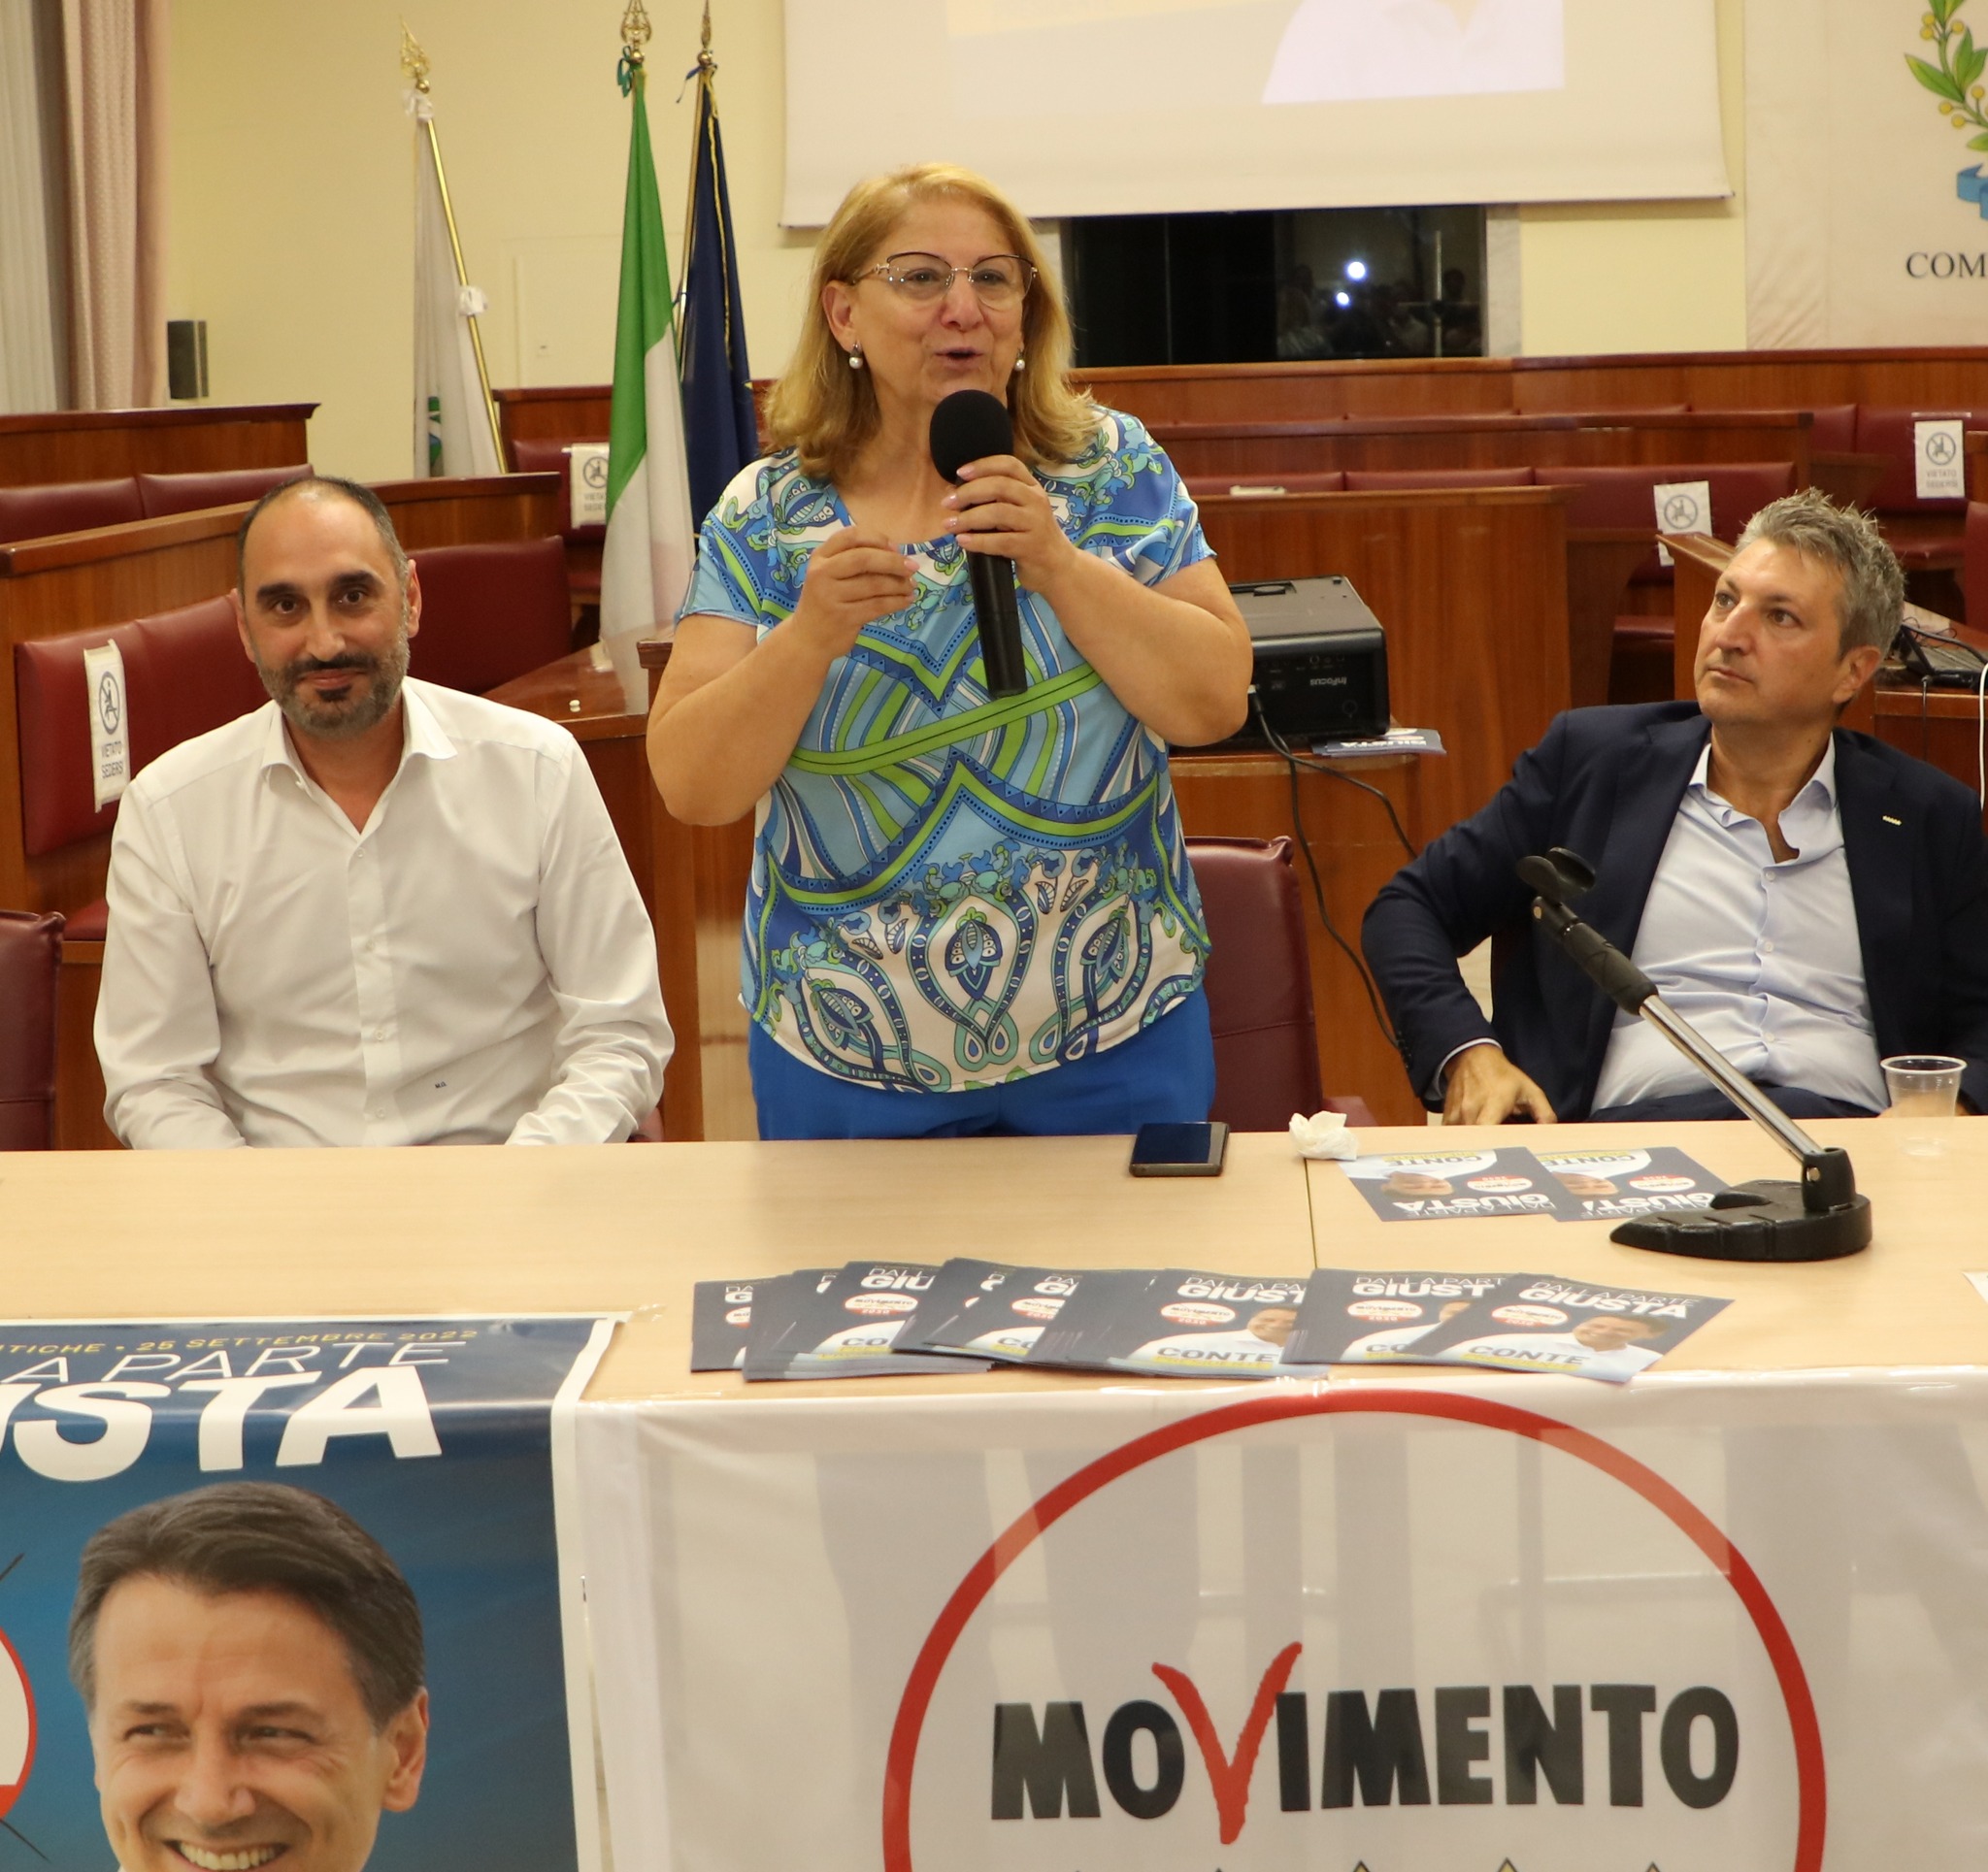 Campania: on. Villani “Non rieletta continuo battaglie politiche”  